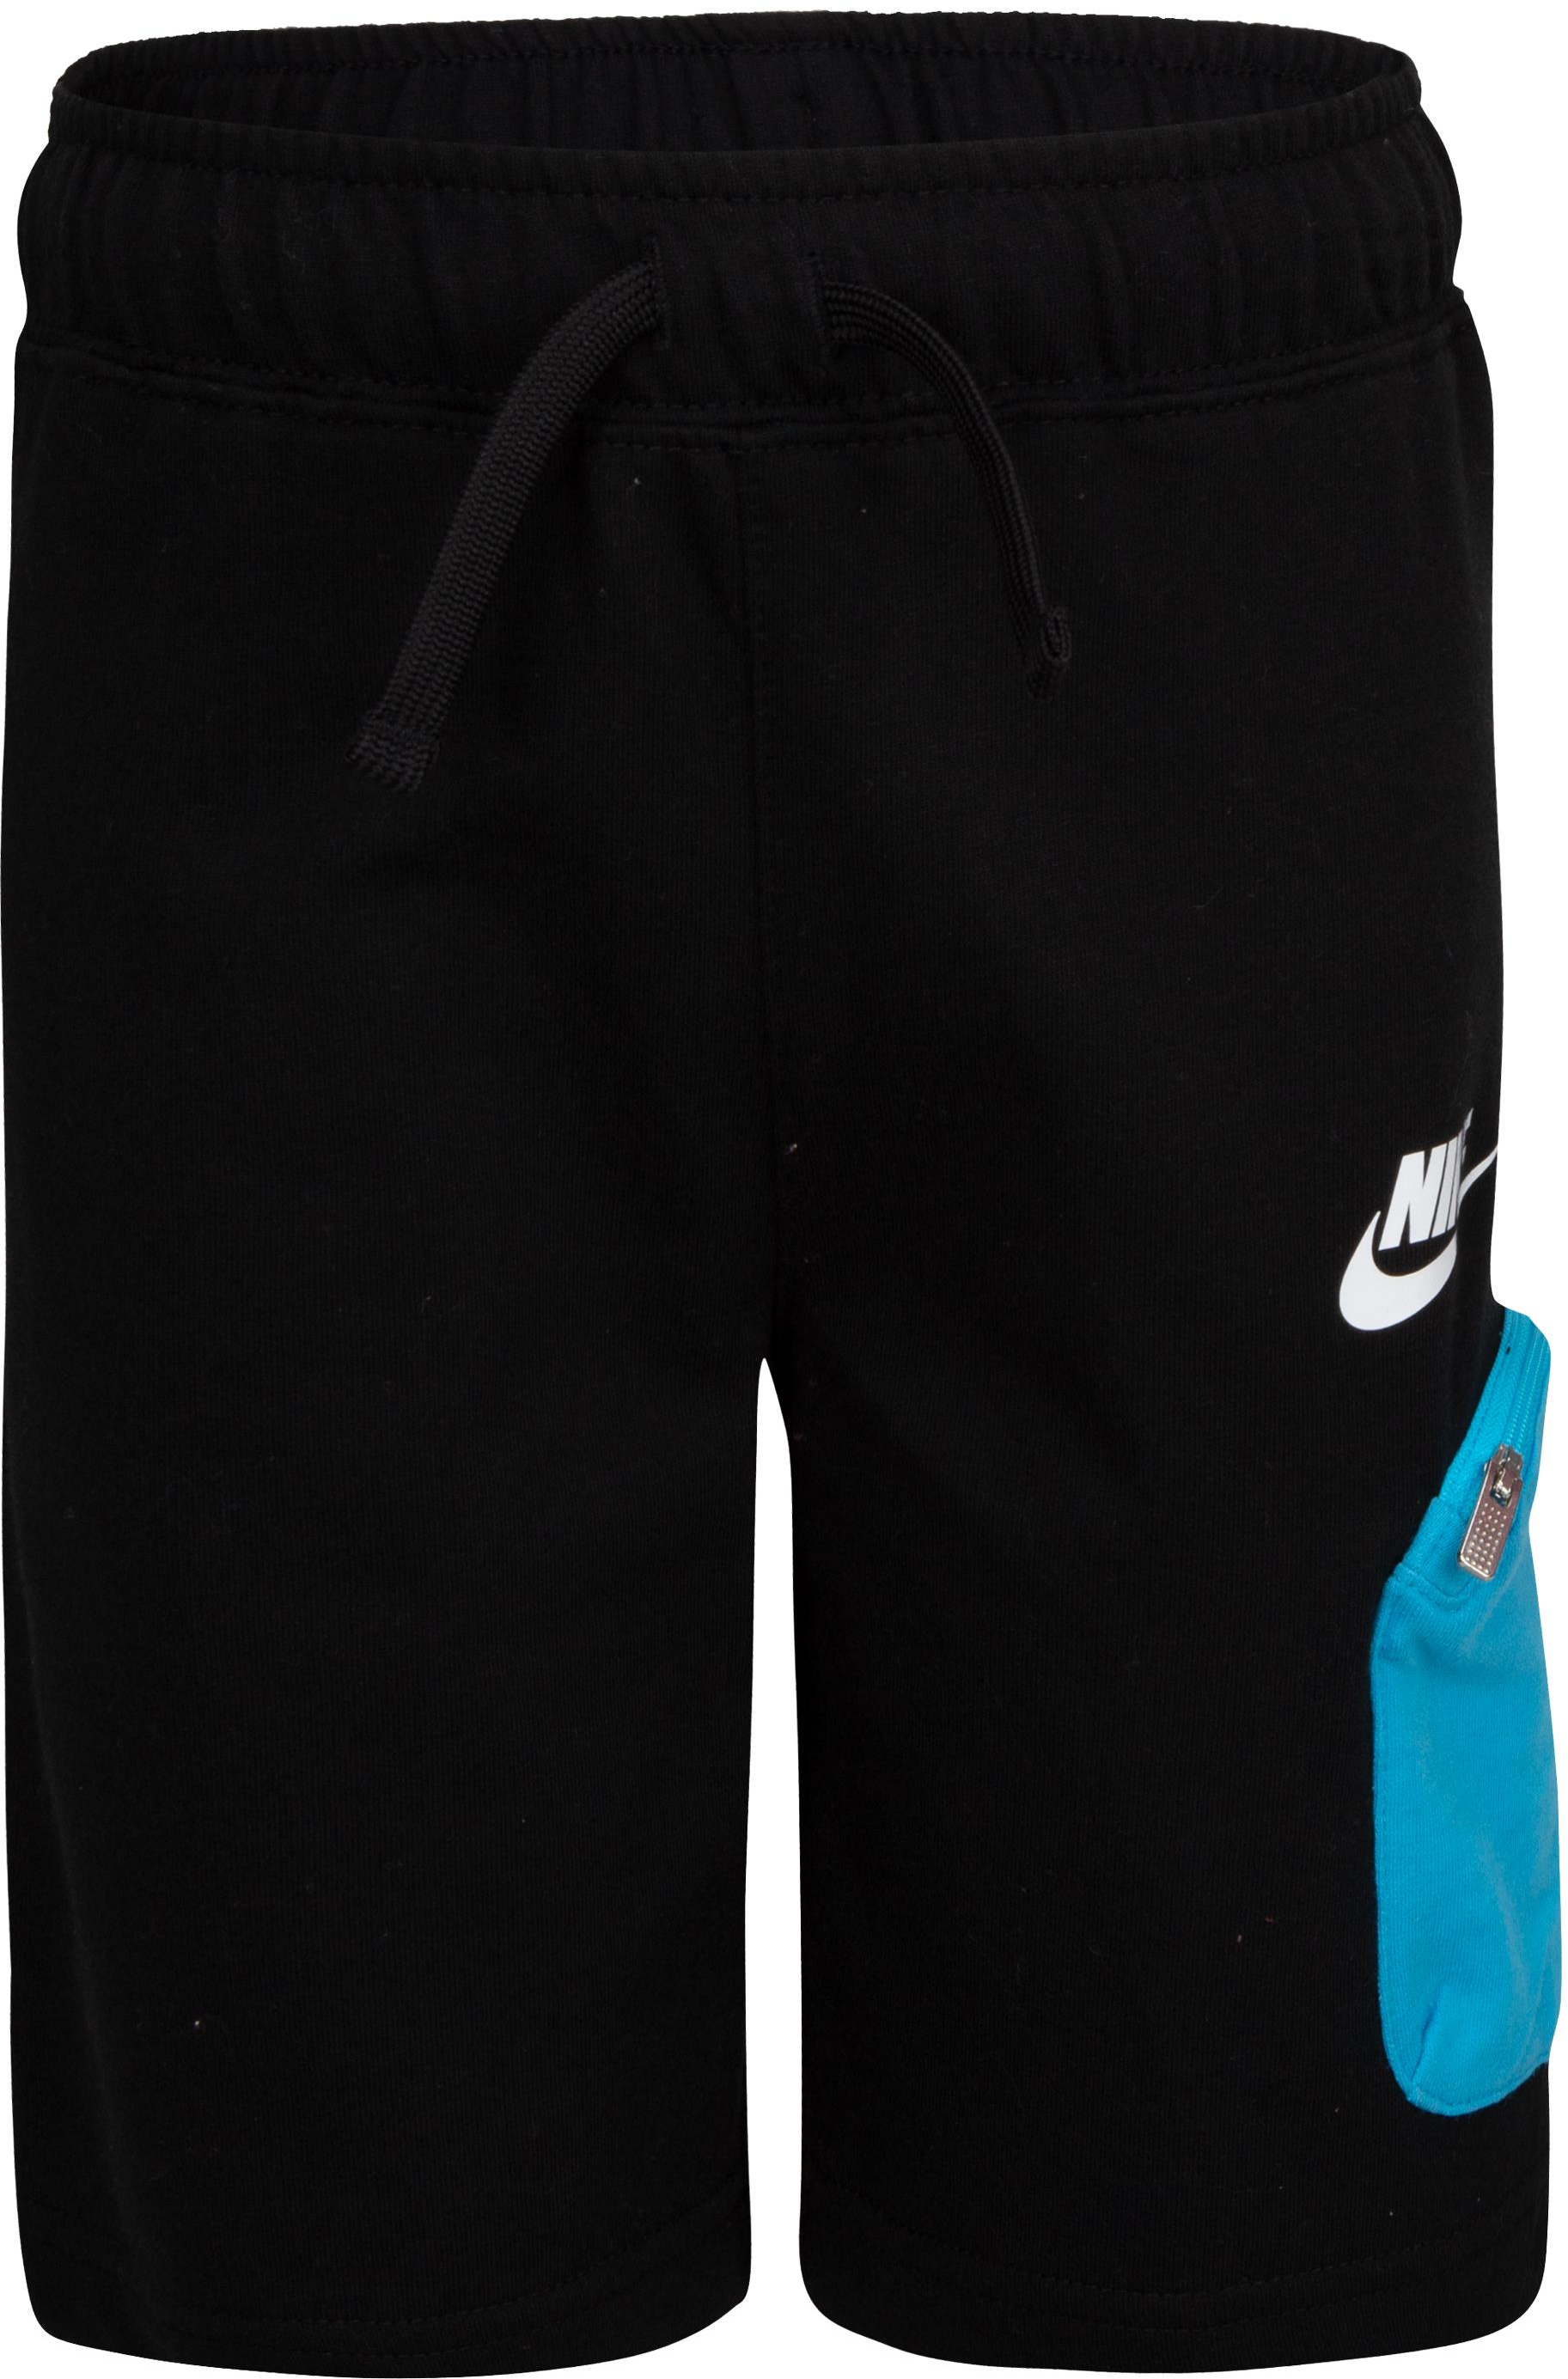 Набор с принтом: шорты из френч терри (для маленьких детей) Nike Kids